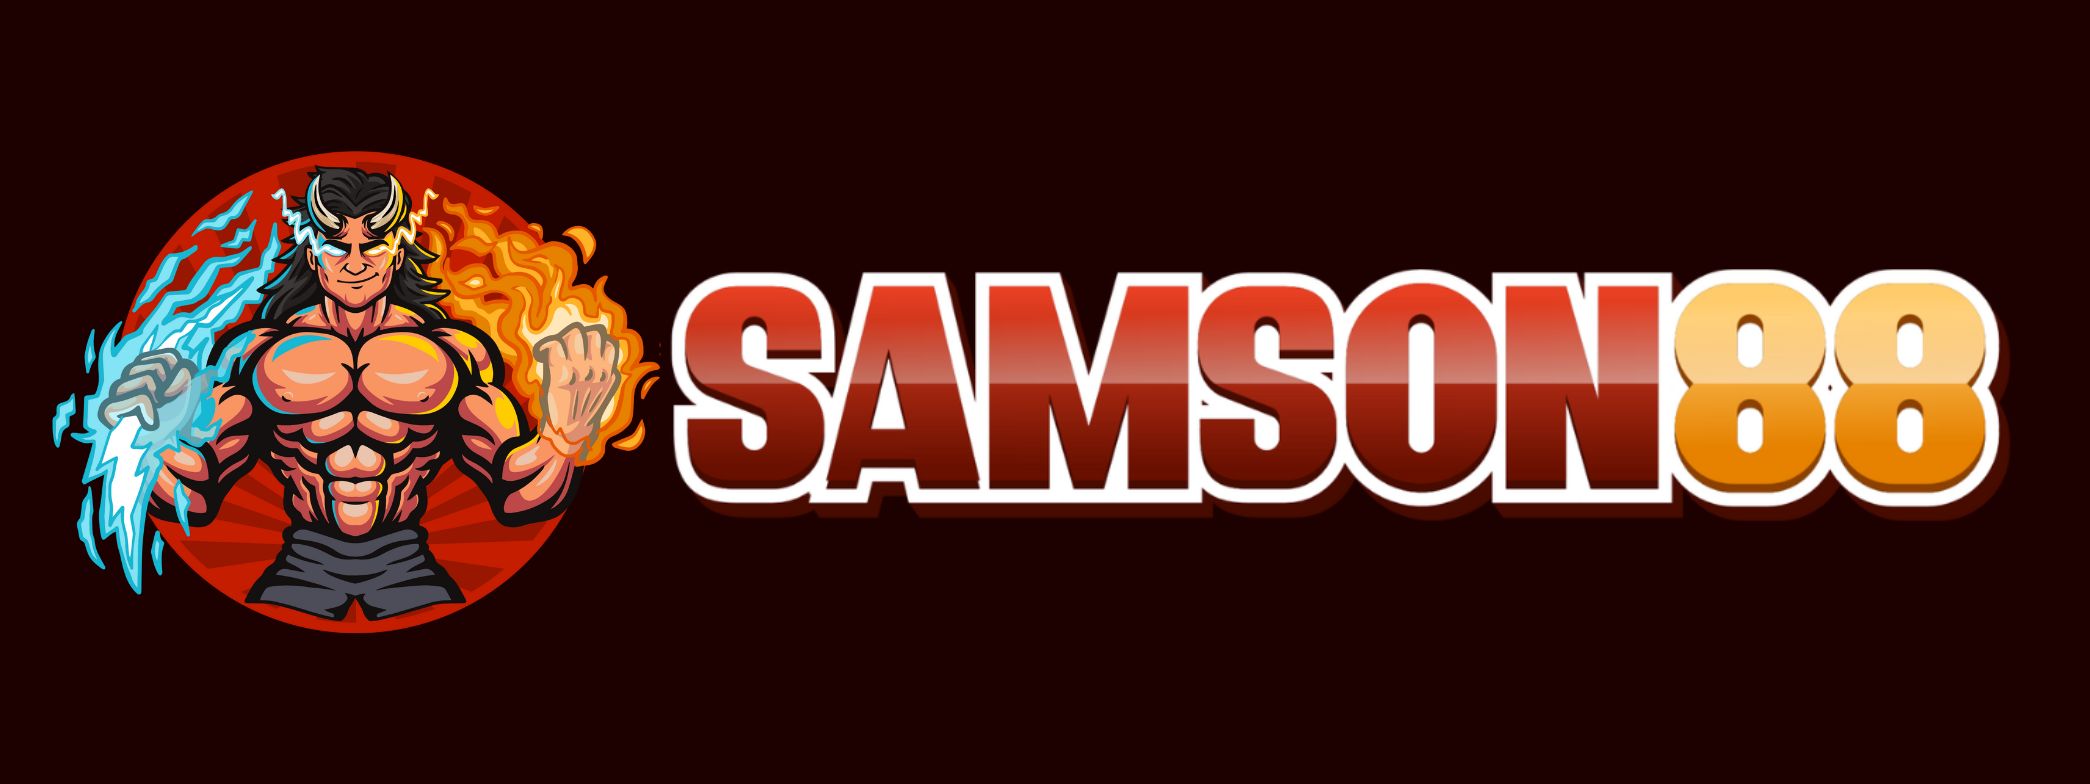 Samson88